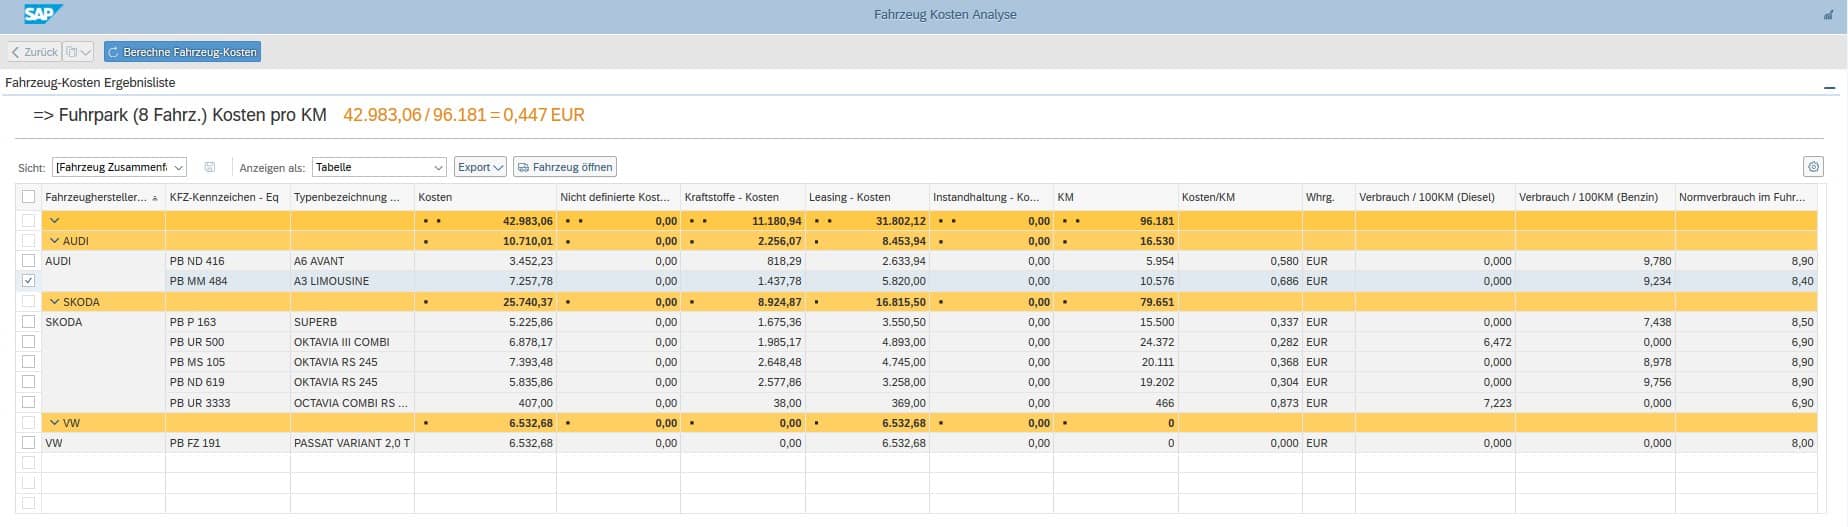 Analysen Flottenmanagement für SAP – Fahrzeugkosten Ergebnisliste